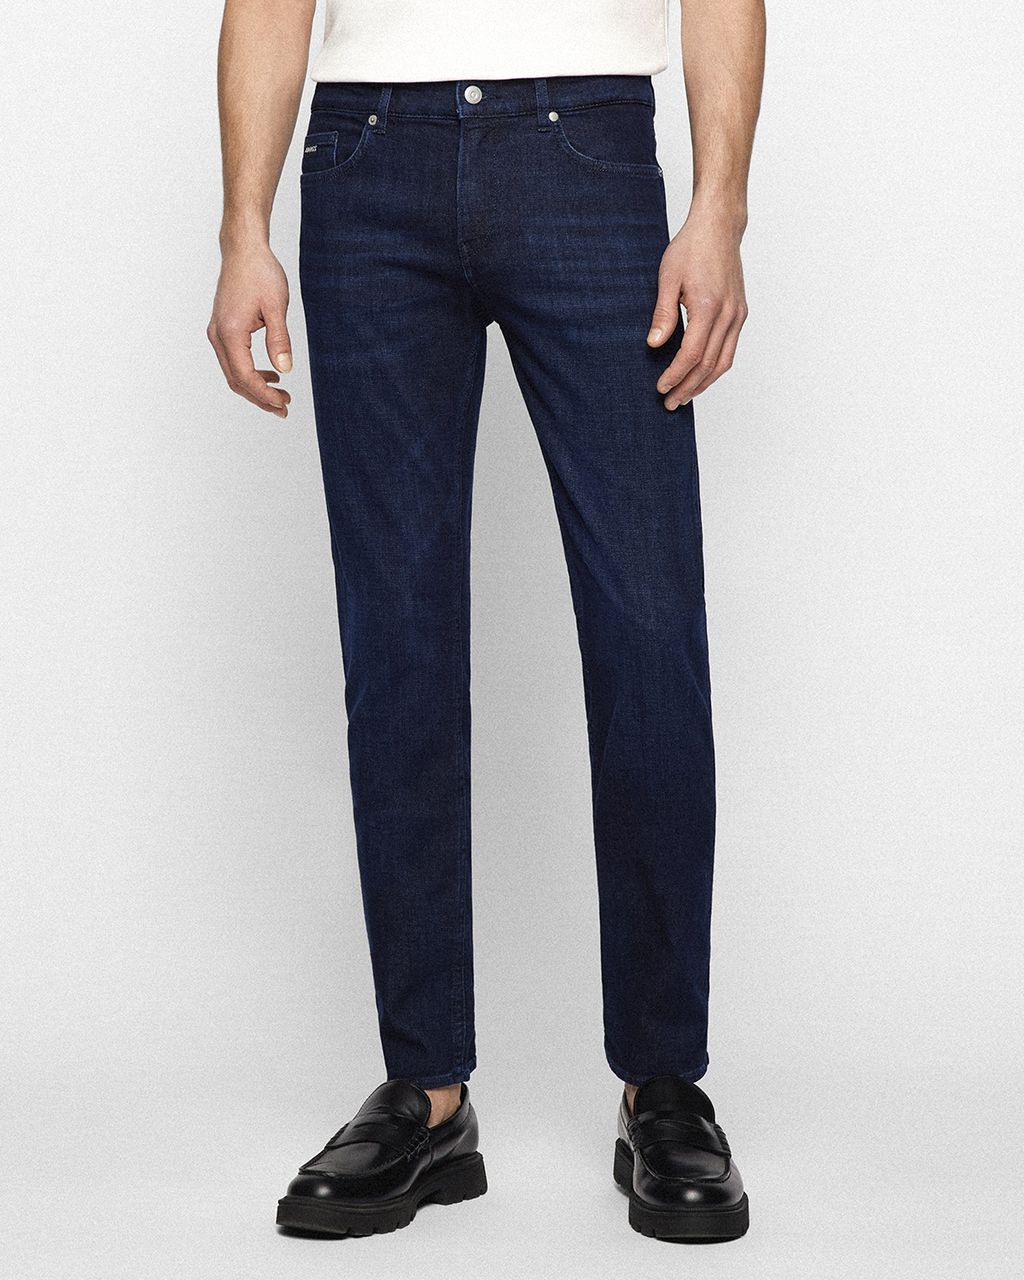 Hugo Boss Menswear Delaware Jeans Donker blauw 076337-001-31/34